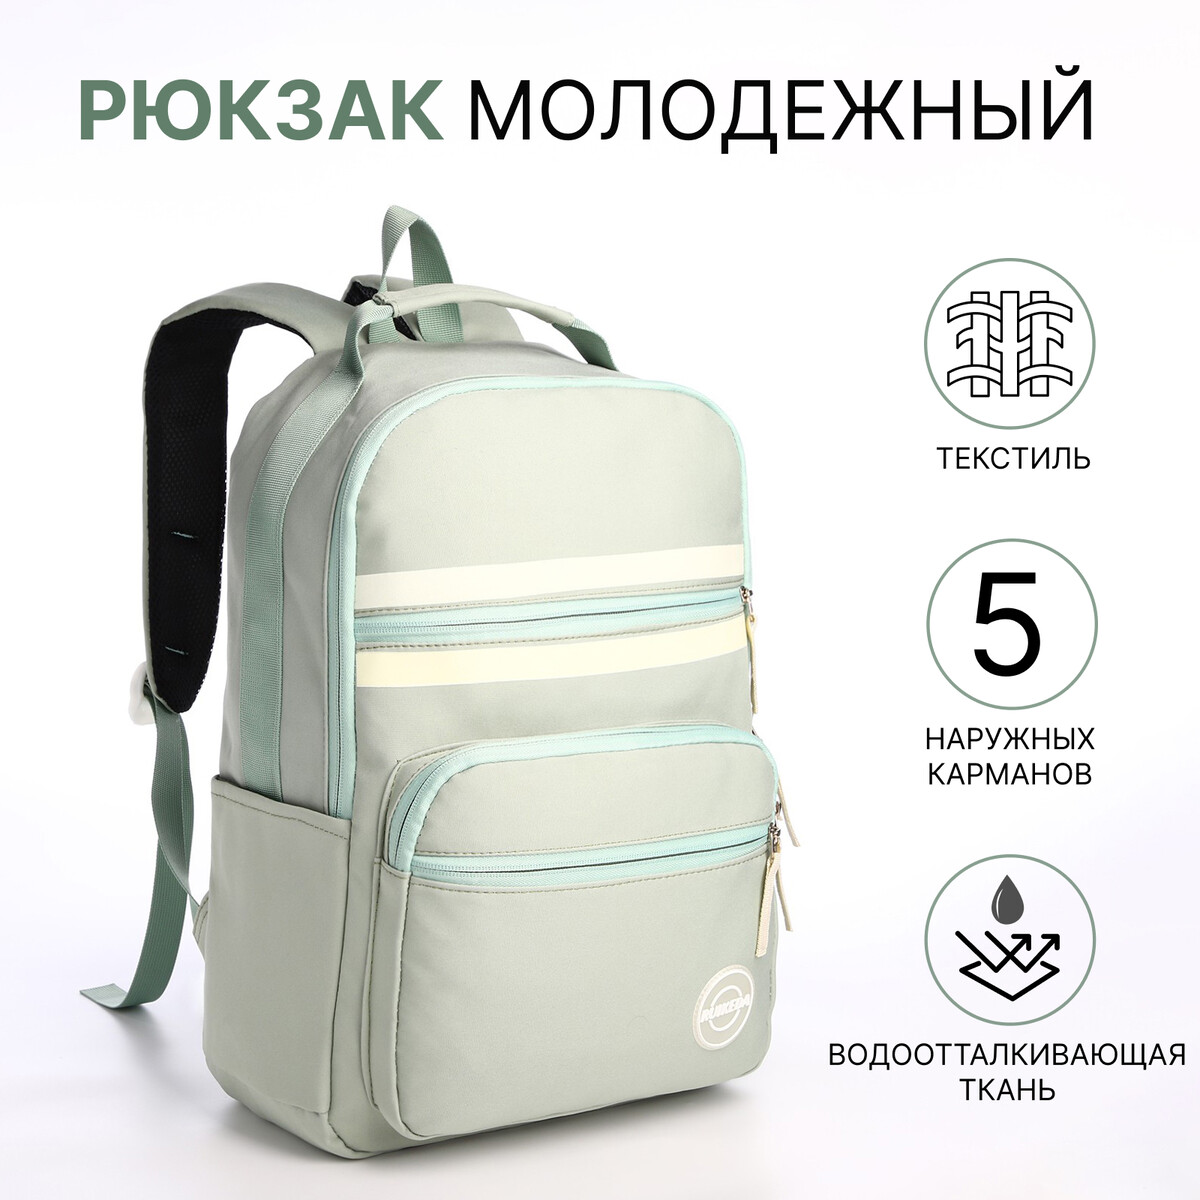 Рюкзак молодежный из текстиля на молнии, 5 карманов, цвет зеленый рюкзак молодежный из текстиля на молнии 5 карманов белый